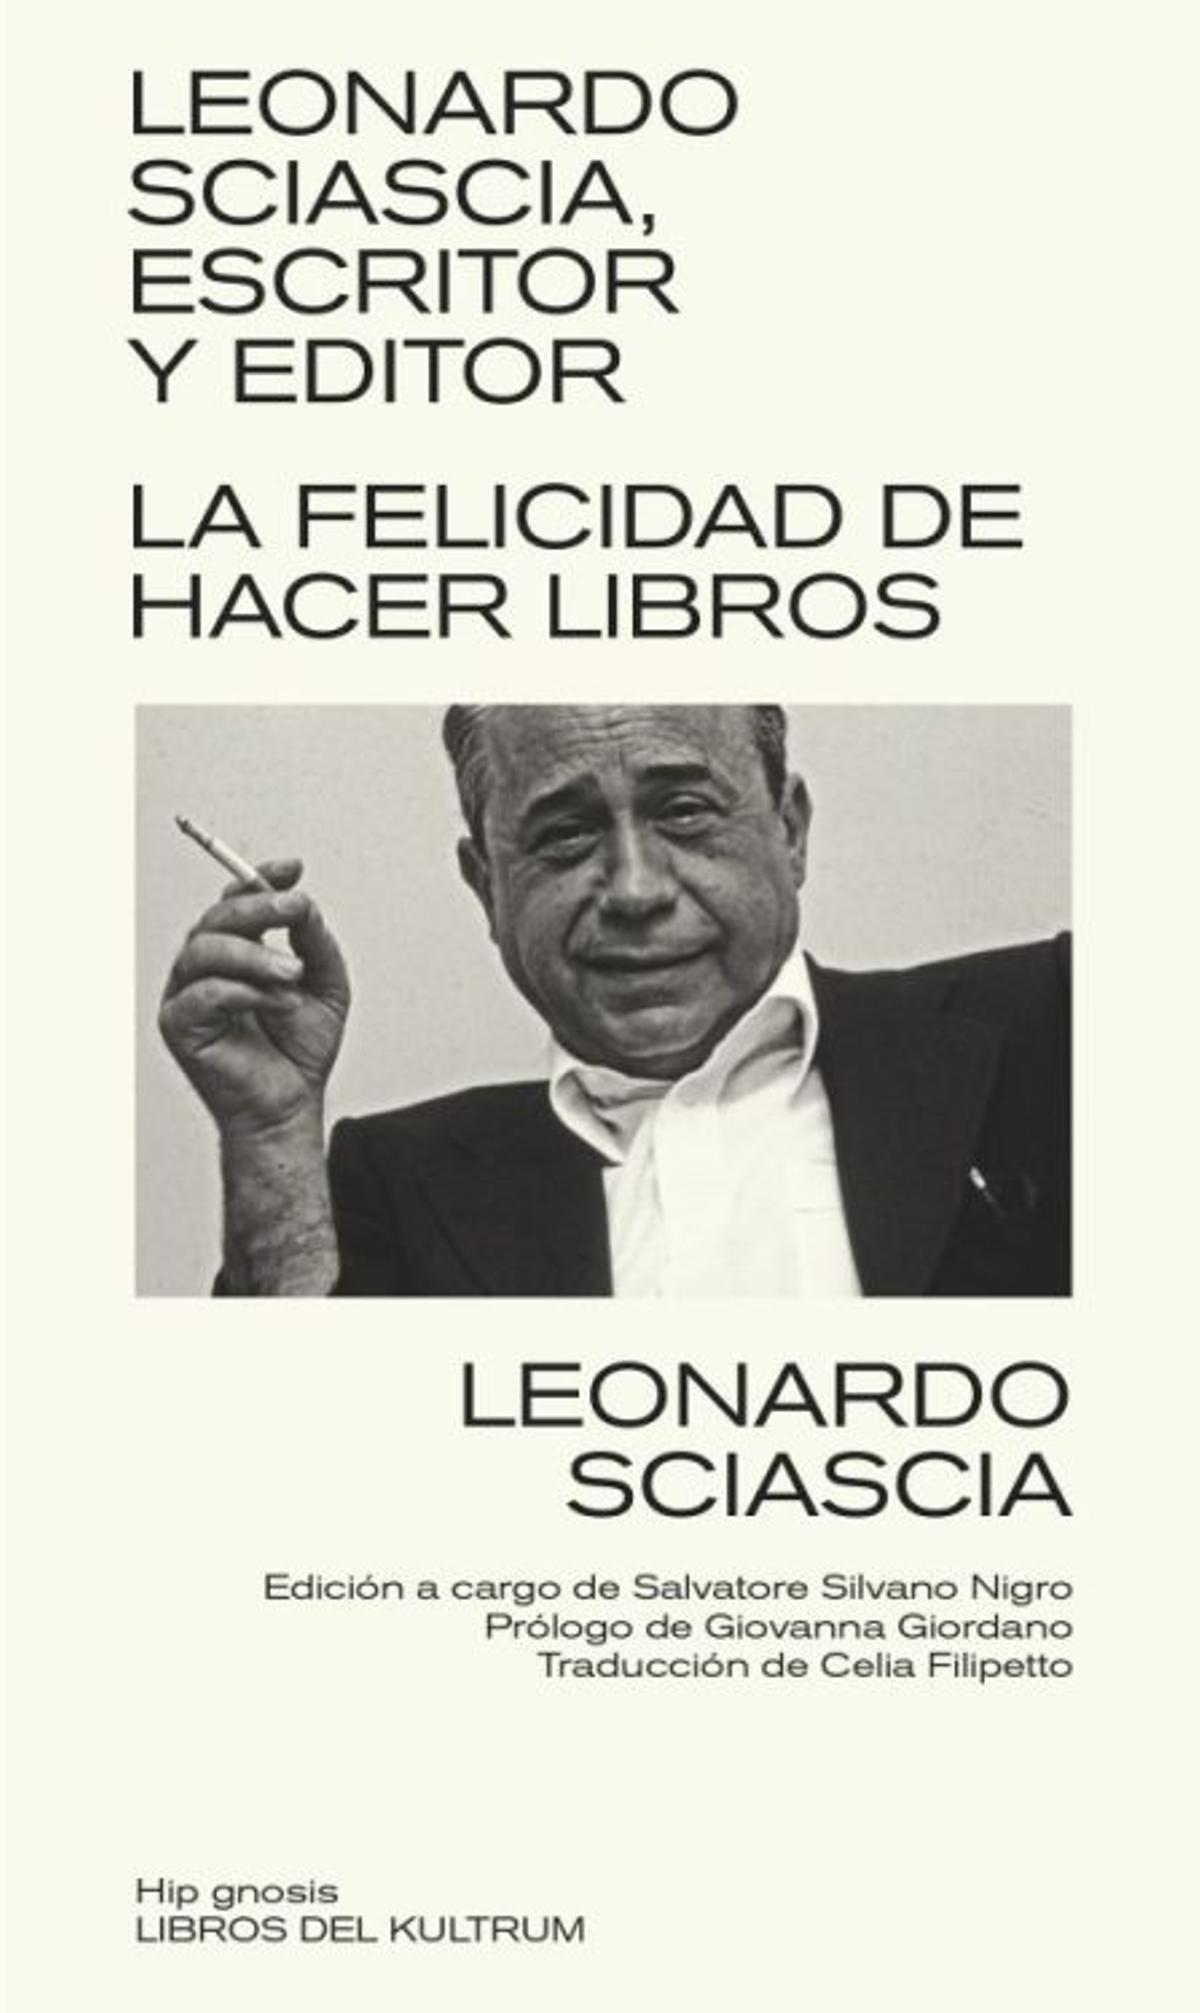 Leonardo Sciascia escritor y editor scaled